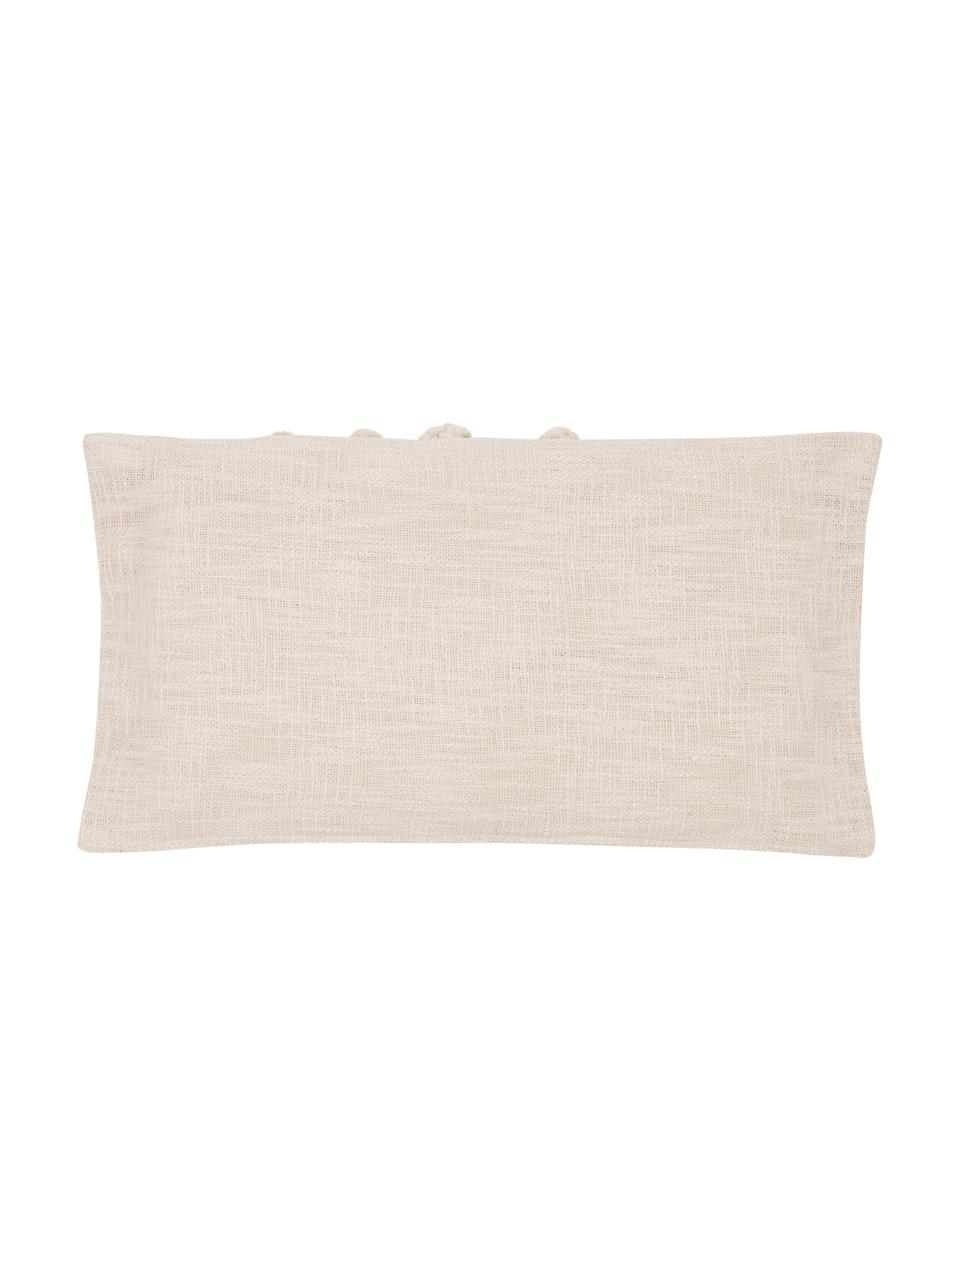 Poszewka na poduszkę z bawełny organicznej Sunrise, 100% bawełna organiczna, Jasny beżowy, S 30 x D 60 cm